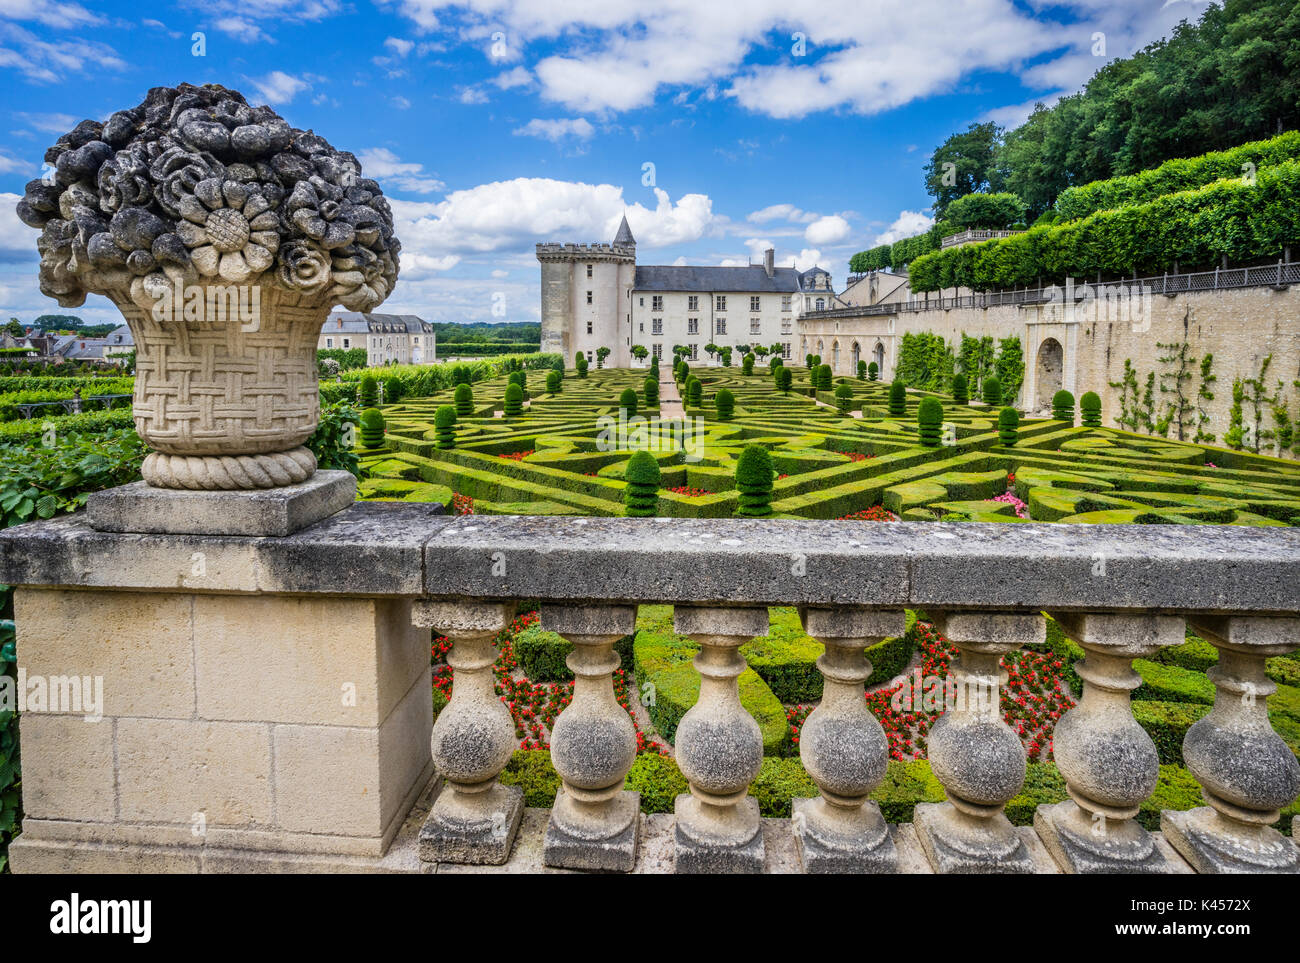 France, Indre-et-Loire department, Château de Villandry, view of the ornamental gardens Stock Photo